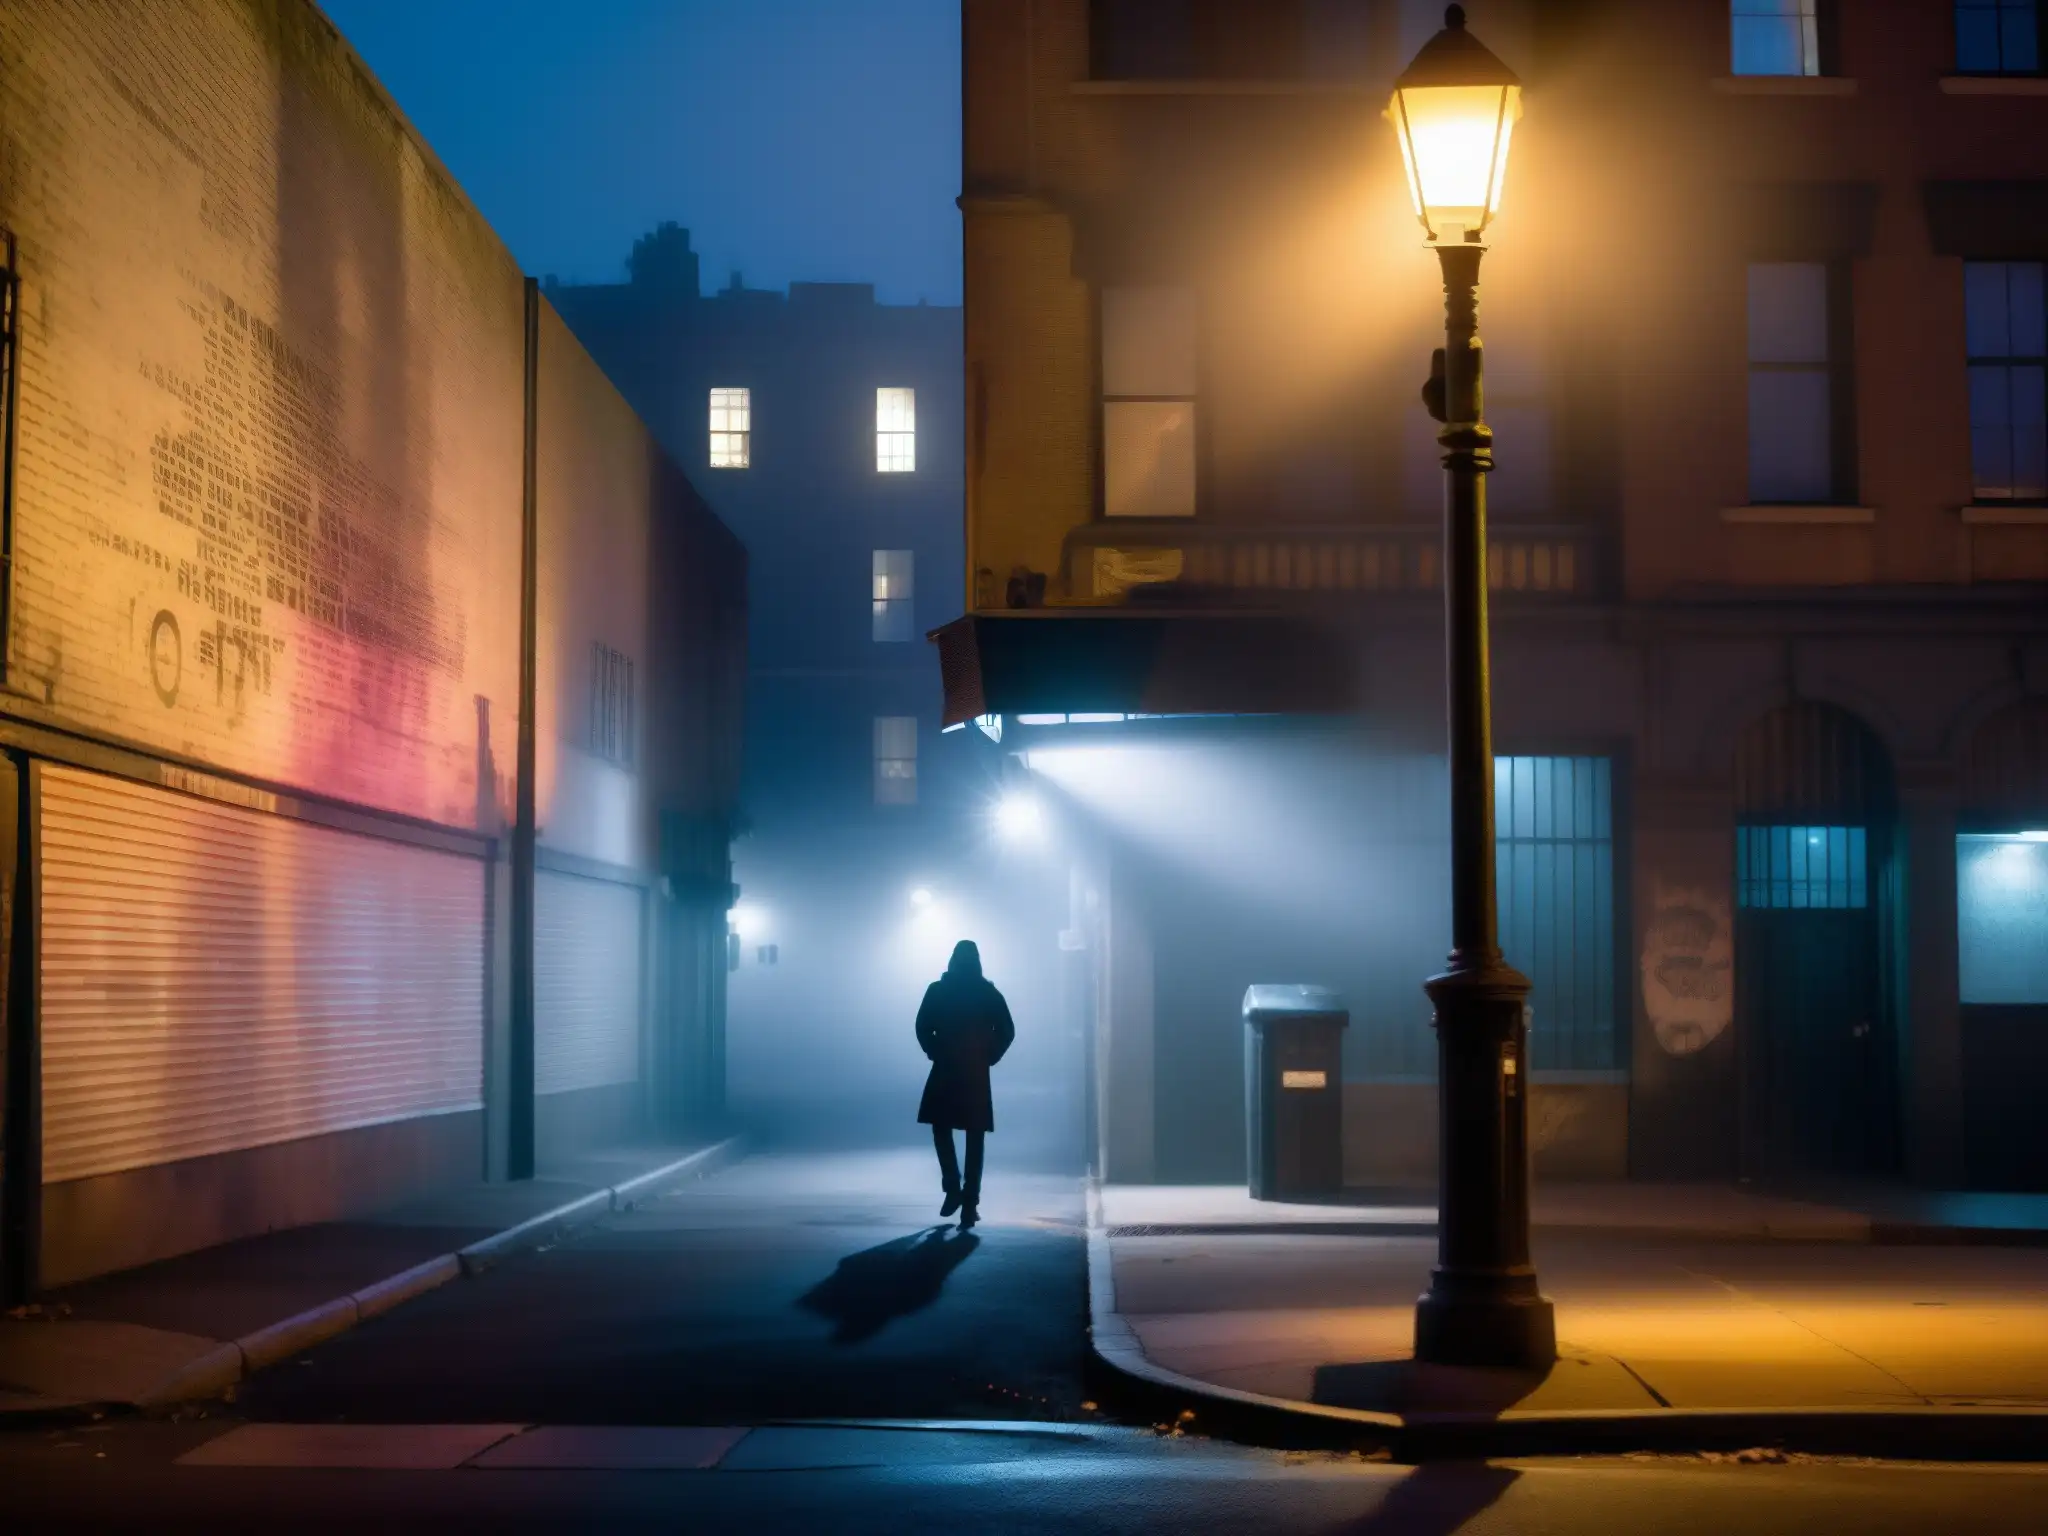 Un oscuro rincón de la calle en la niebla, con una figura sombría acechando